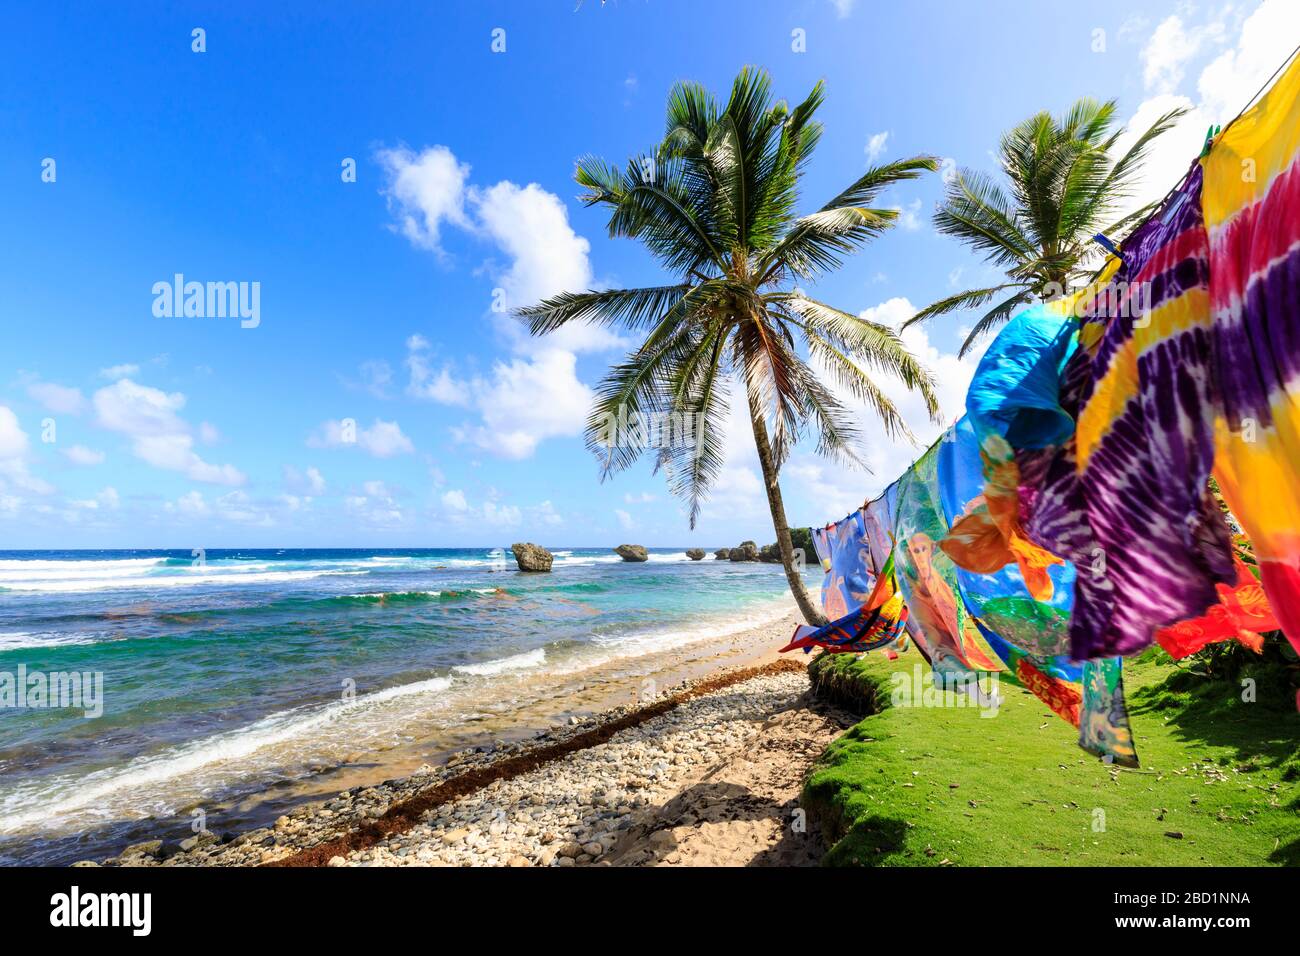 Bathsheba, vêtements colorés soufflent dans la brise, palmiers balayés par le vent, vagues de l'Atlantique, côte est sauvage, Barbade, îles Windward, Caraïbes Banque D'Images